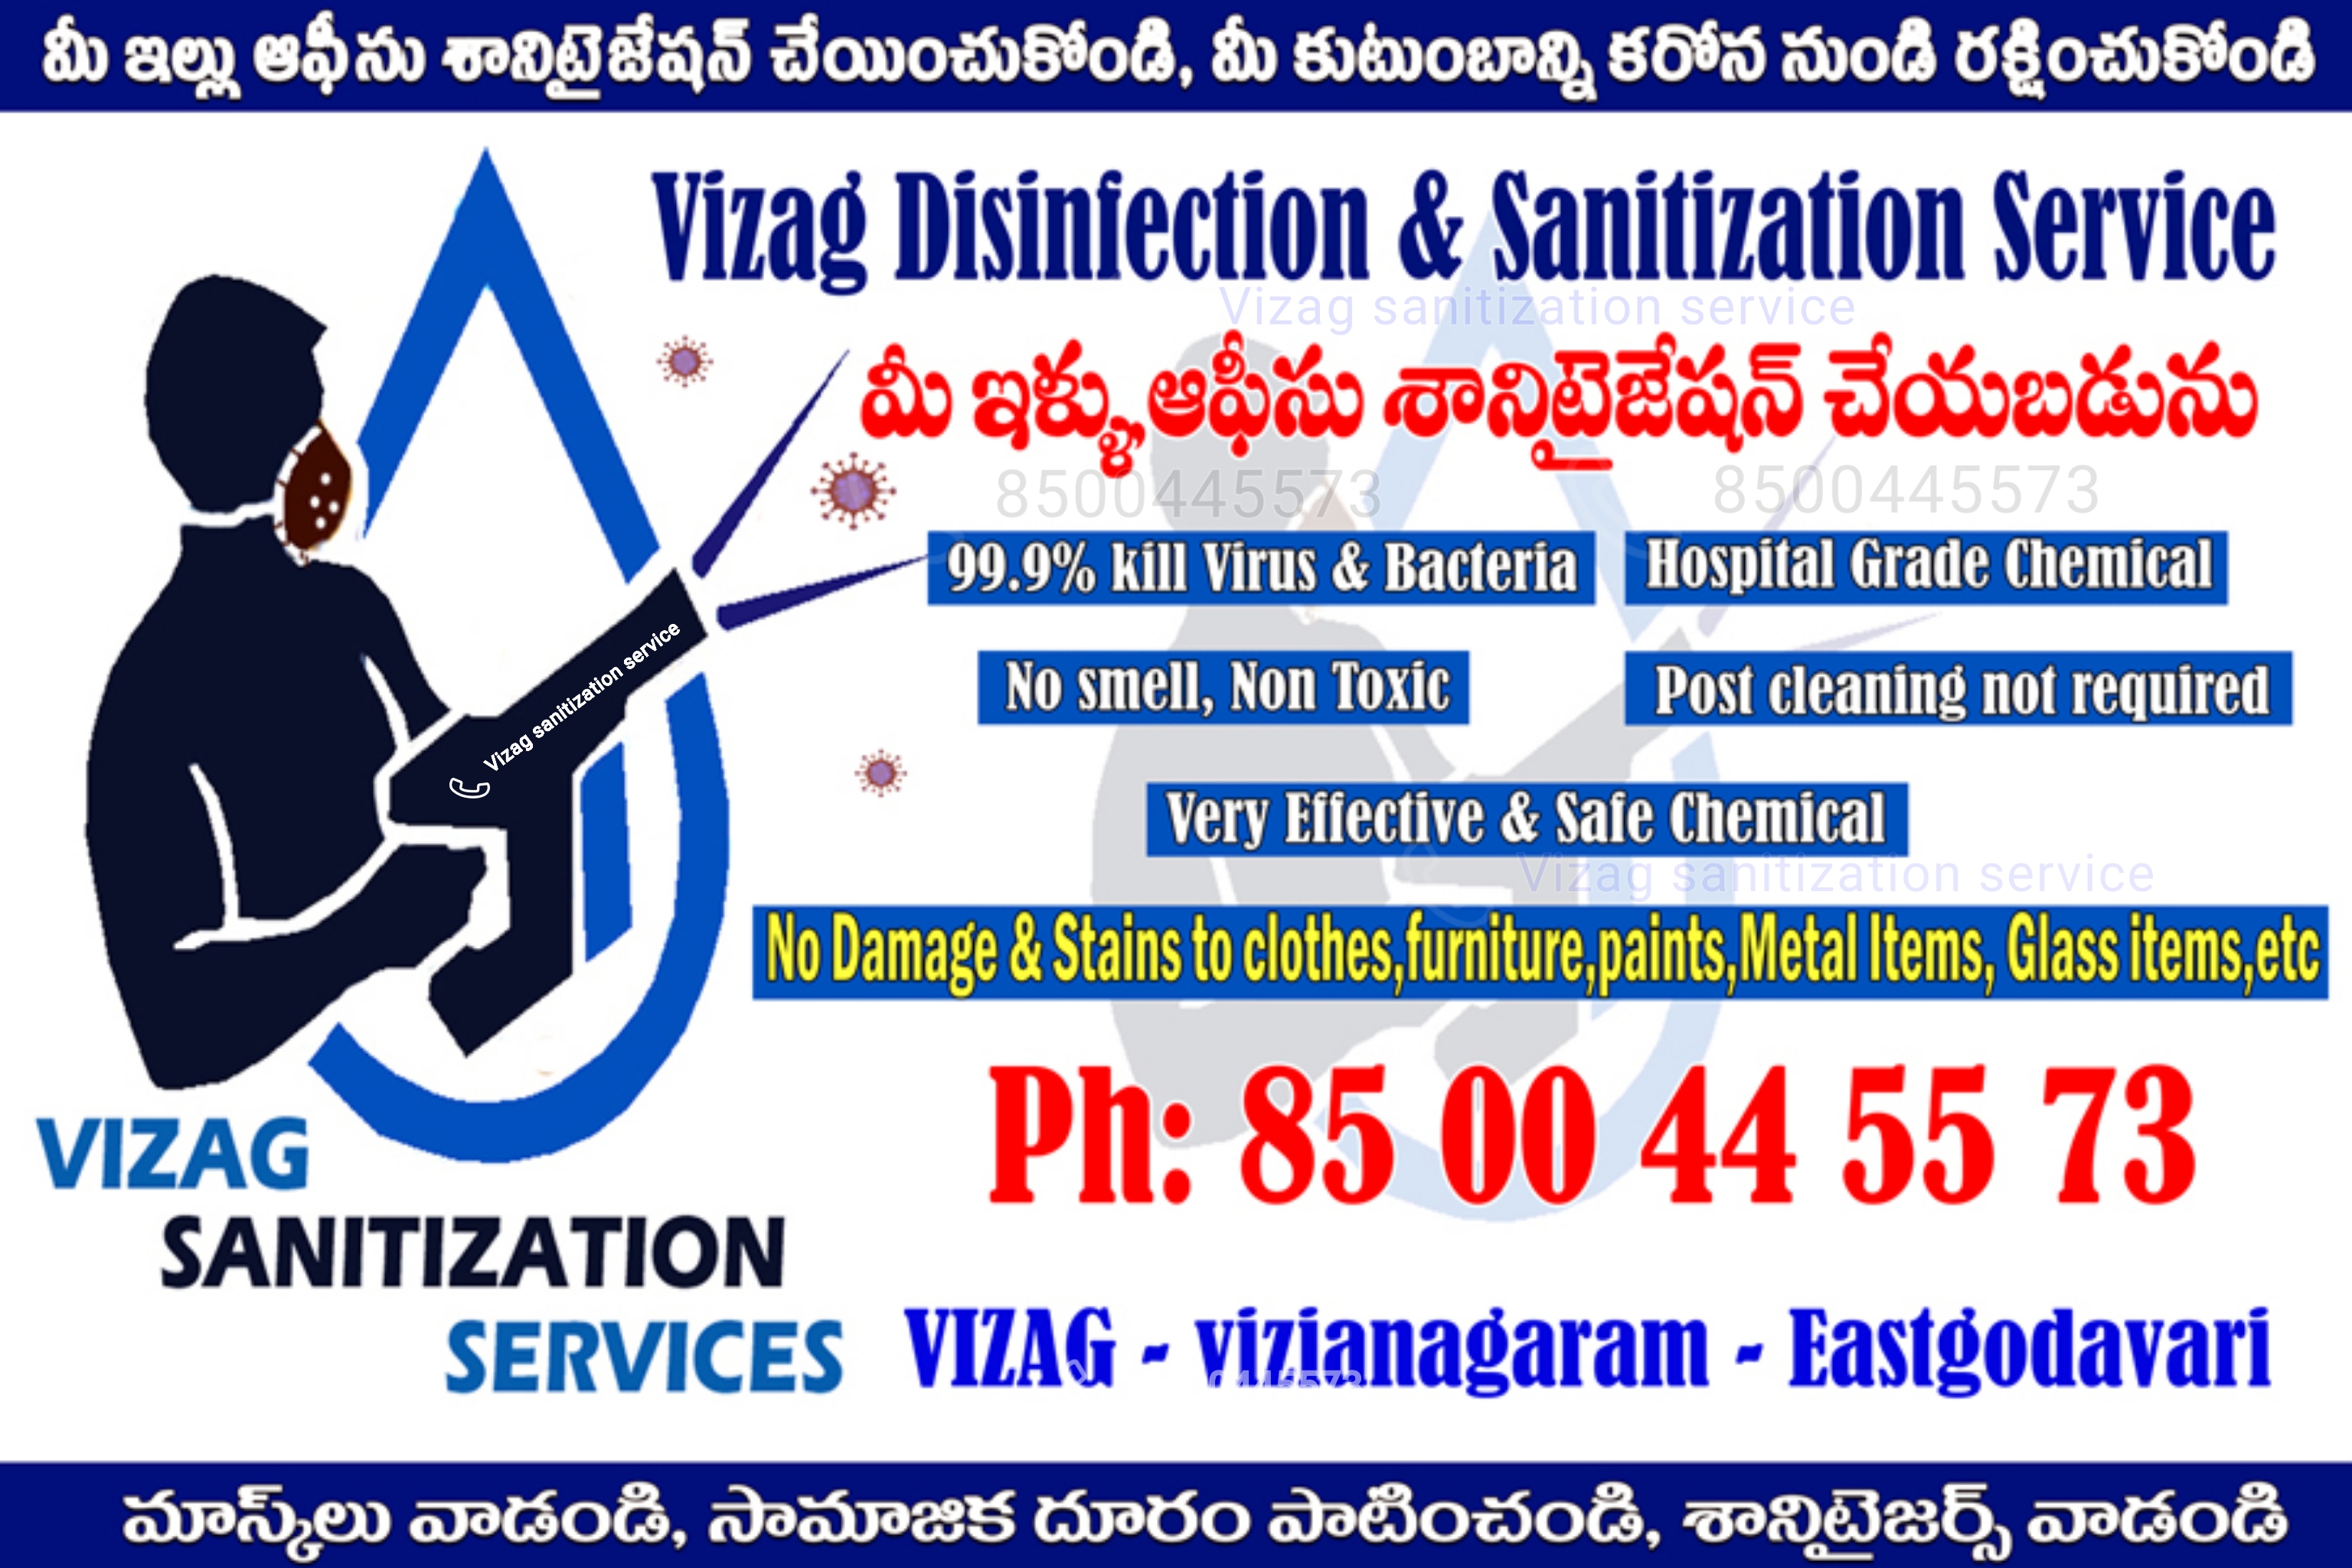 Vizag sanitization services